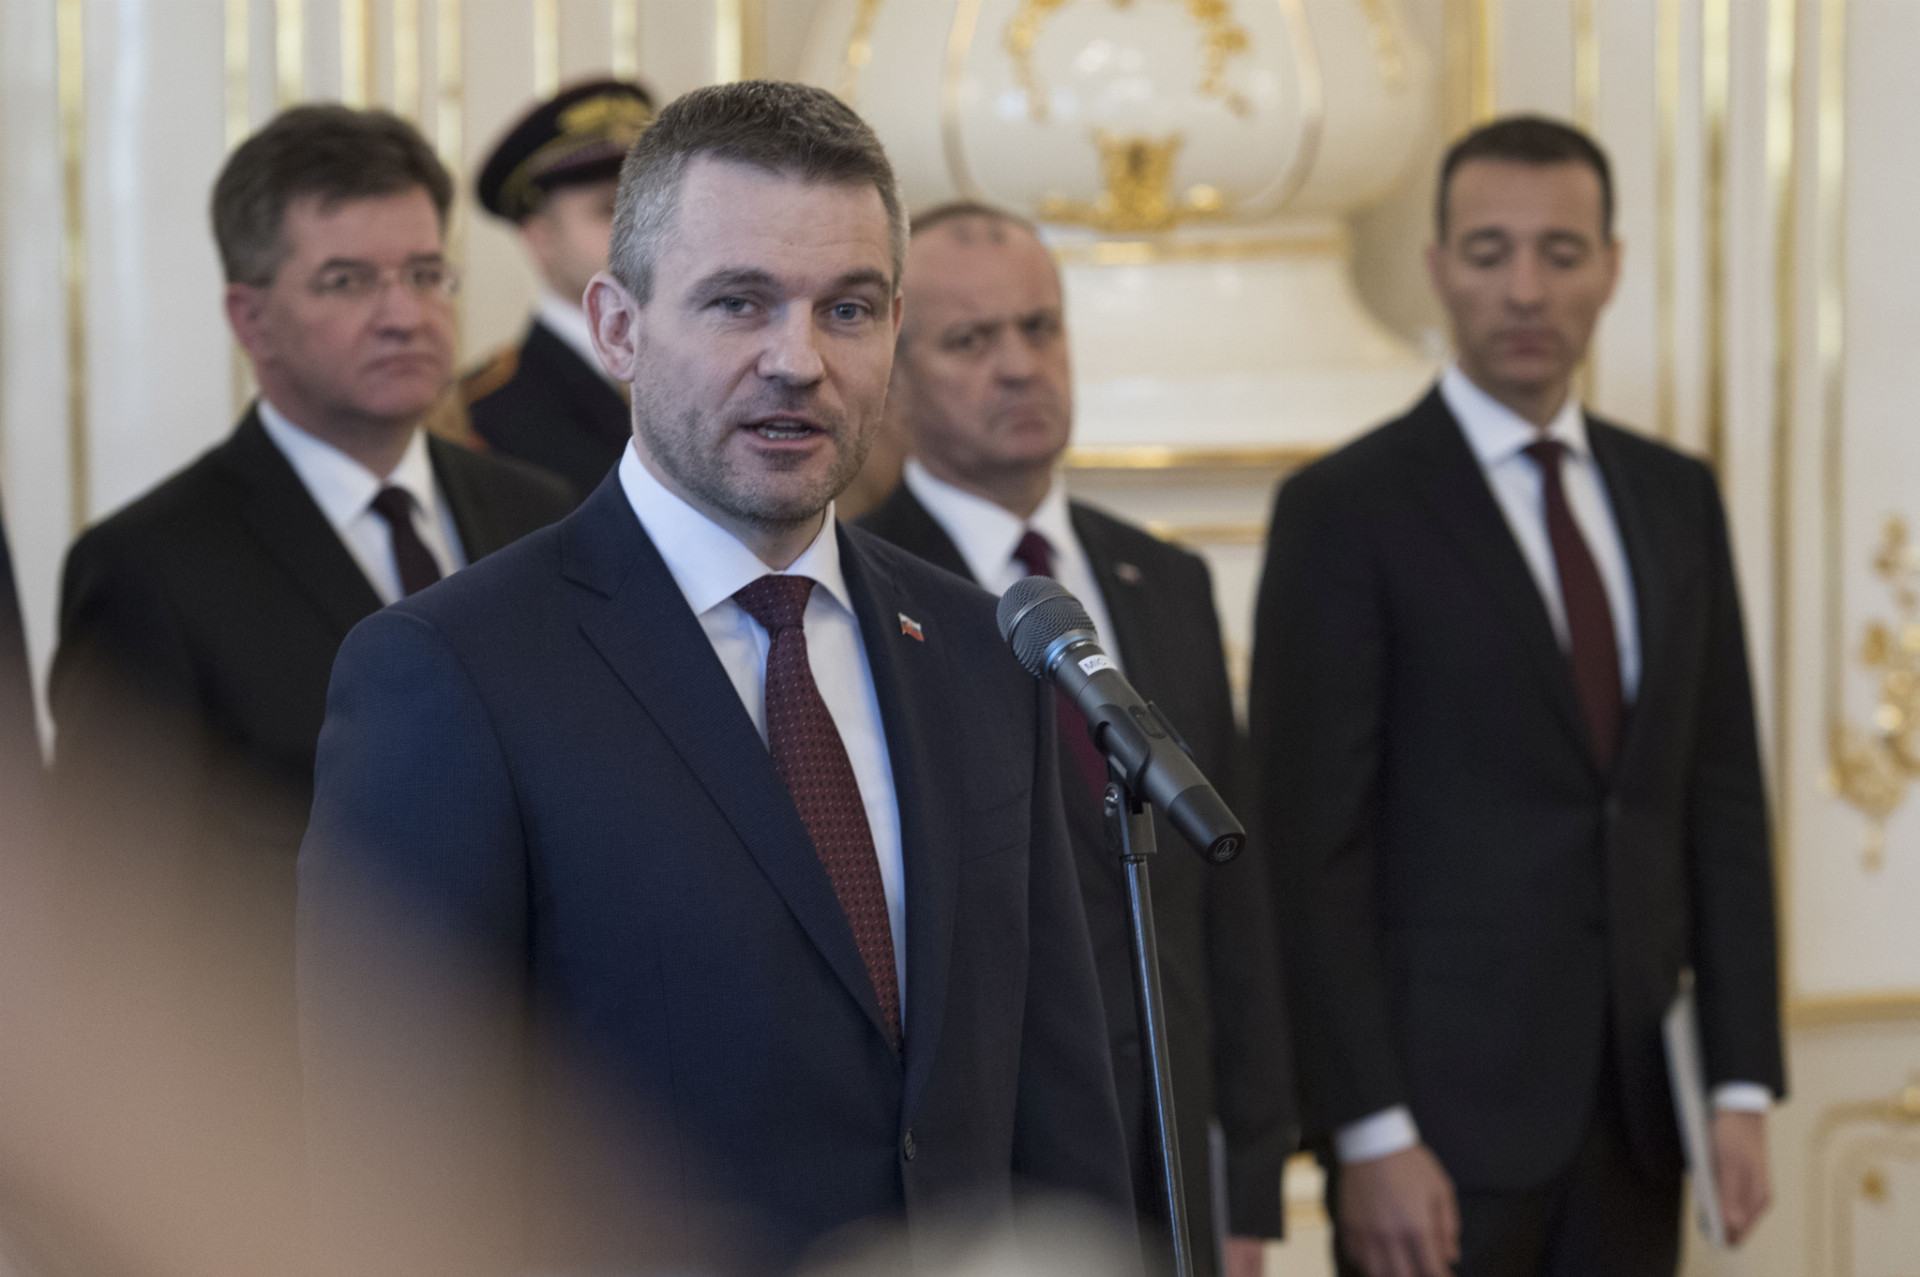 Na snímke v popredí novovymenovaný predseda vlády SR Peter Pellegrini (Smer-SD) počas vymenovania nových ministrov kabinetu 